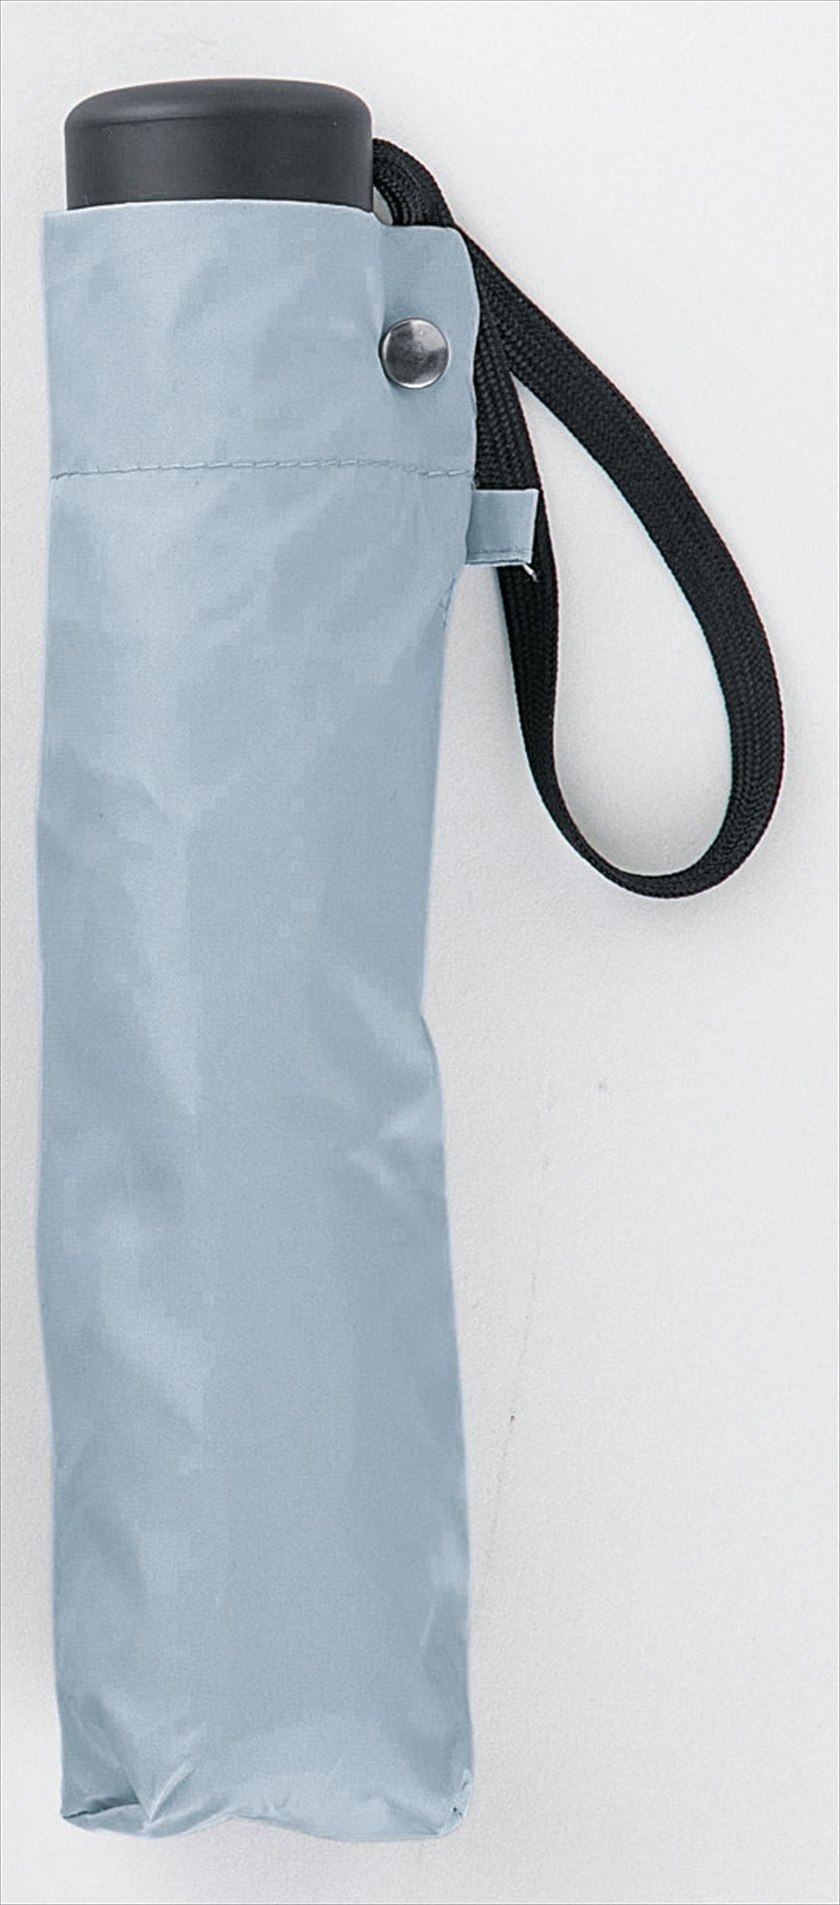 シンプリ―晴雨兼用折りたたみ傘■ブルーグレー